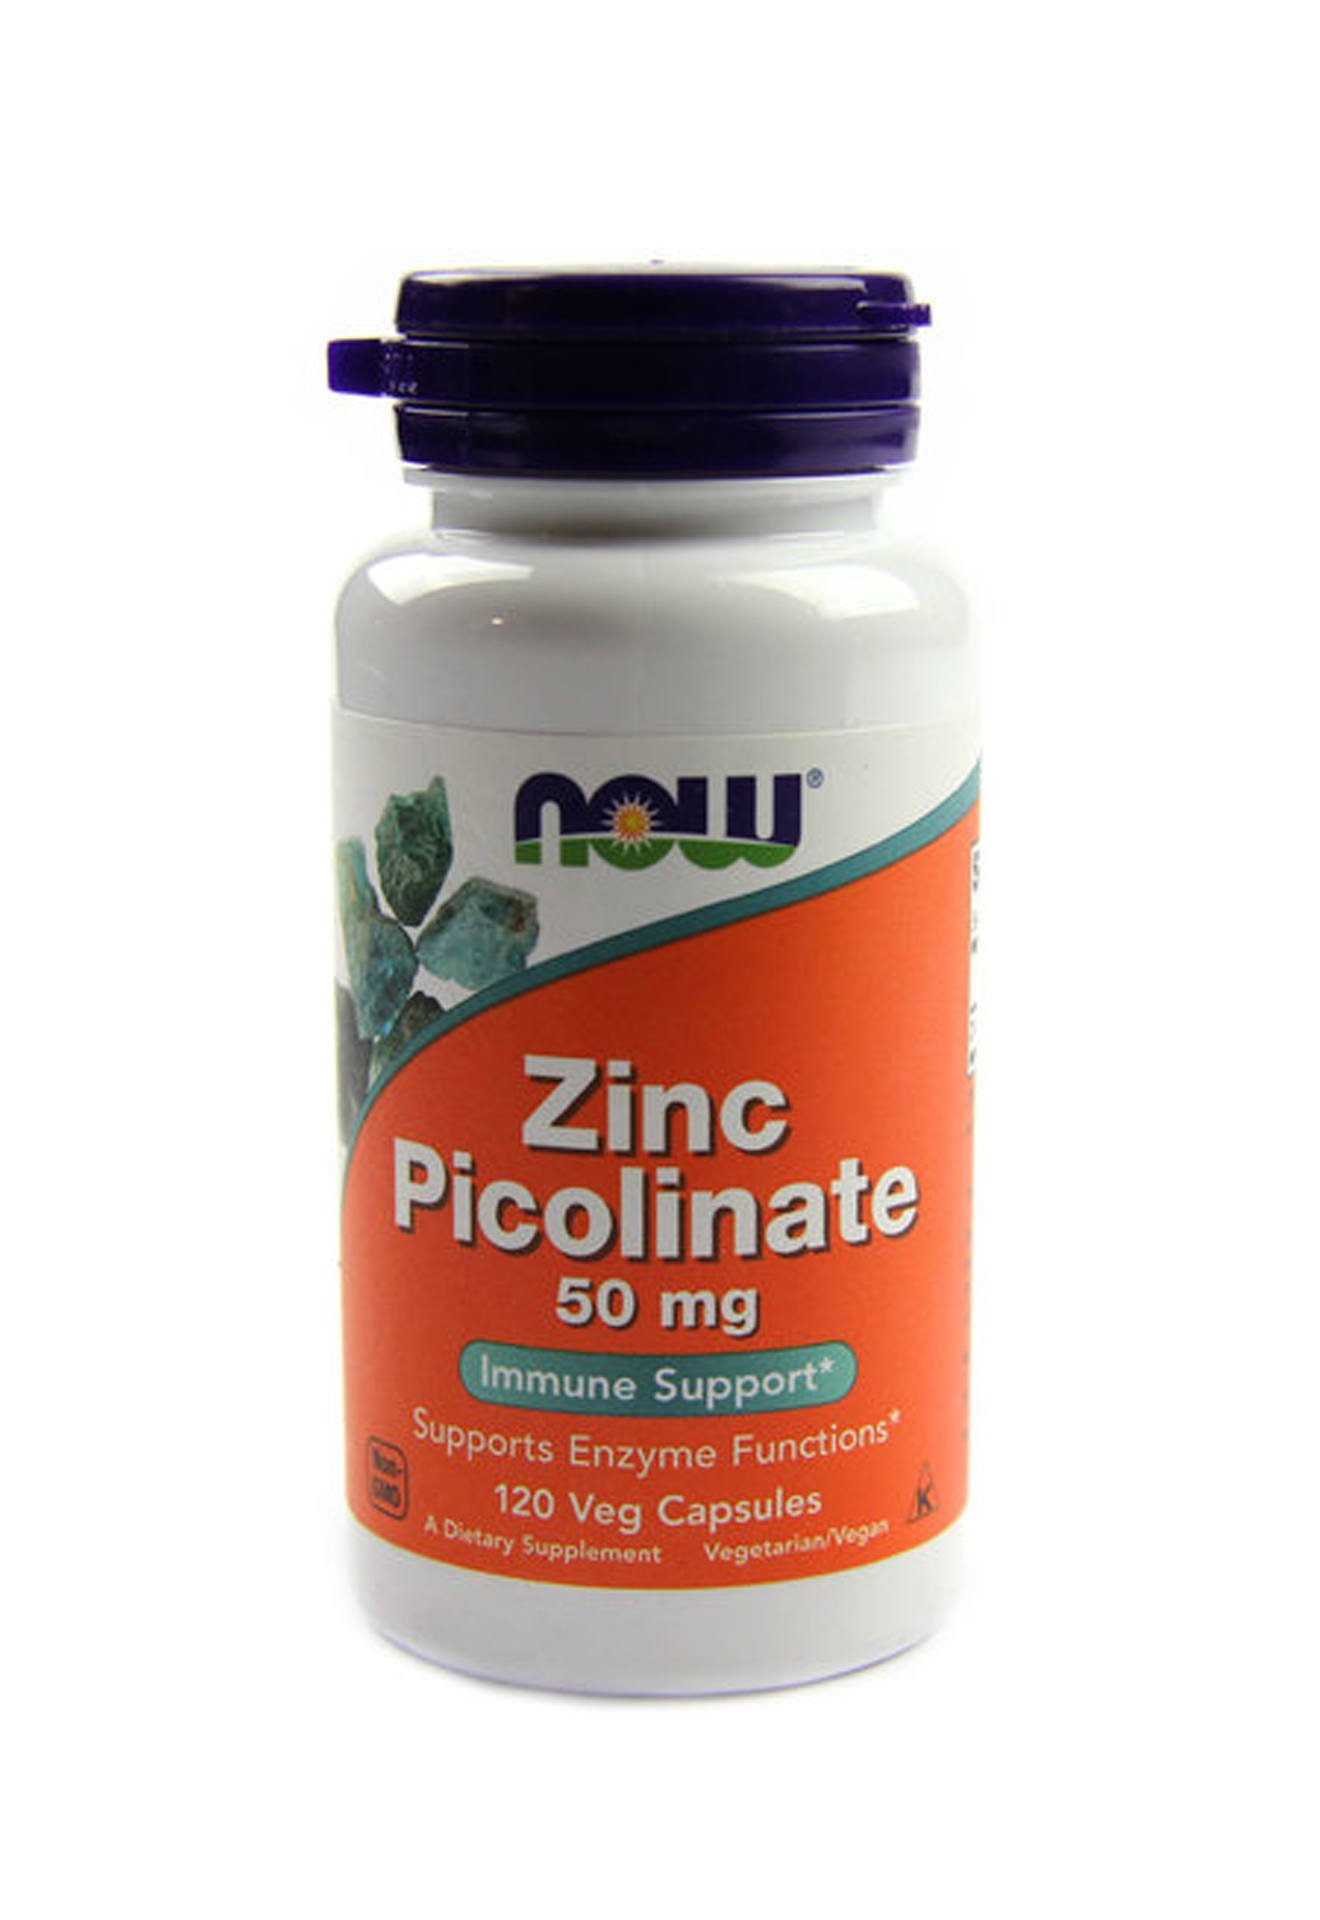 Zinc. Zinc Picolinate 50 мг. Now Zinc Picolinate цинк 50 мг. Zinc Picolinate 50 MG Now foods. Now Zinc Picolinate 50 MG 60 VCAPS.